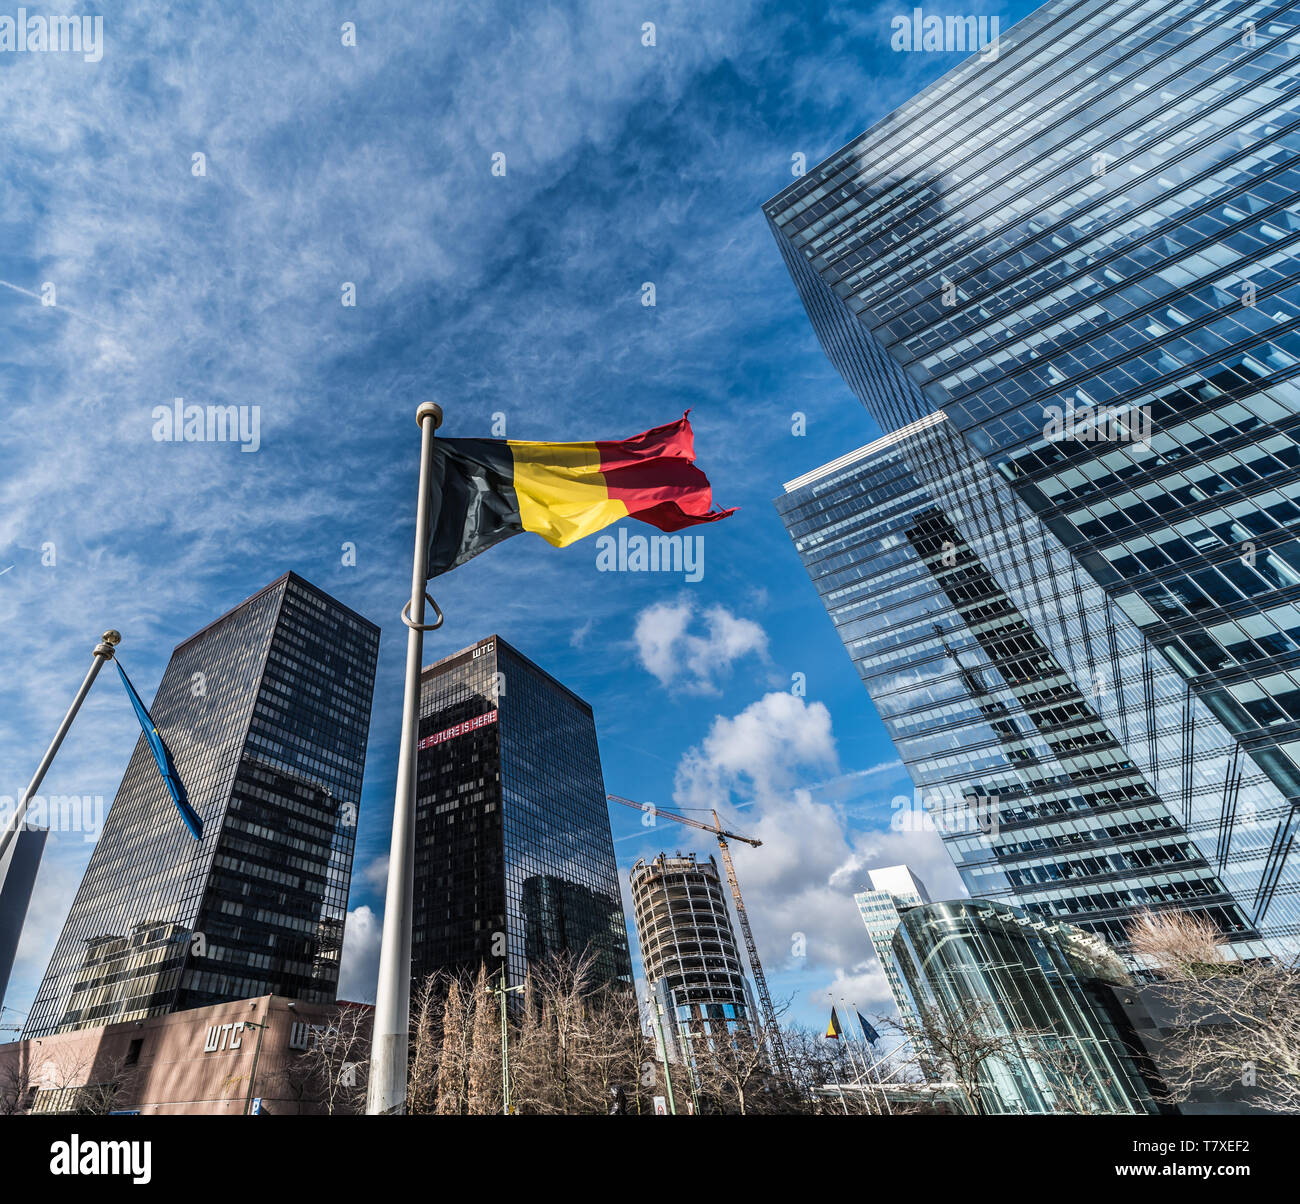 Brüssel, Belgien - 03 10 2019: moderne Wolkenkratzer aus Glas und Stahl der Kleinen Manhattan Finanz- und Geschäftsviertel mit einer belgischen Flagge Stockfoto